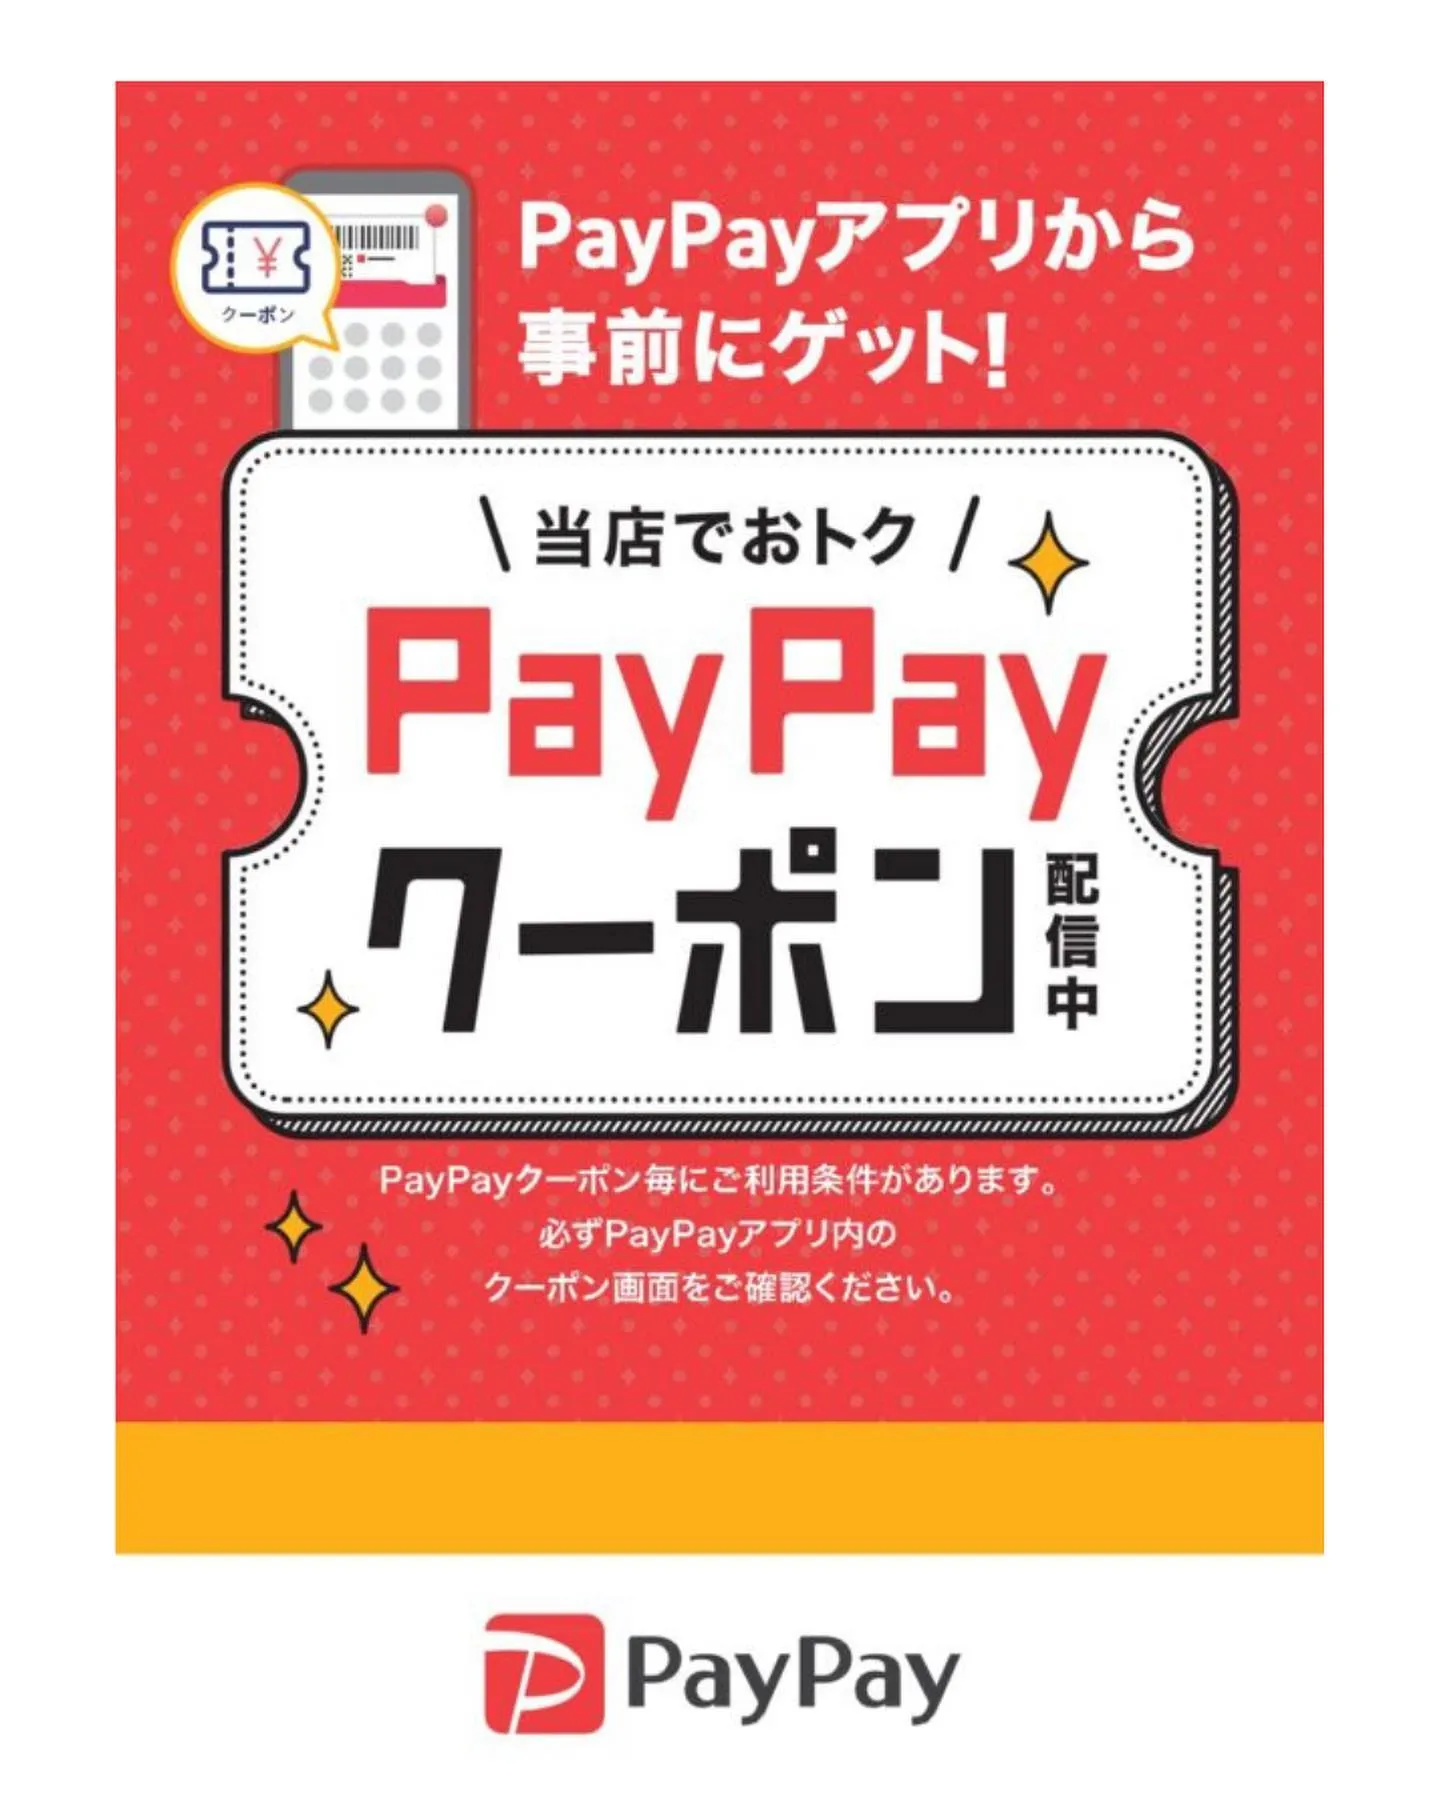 【PayPayクーポンのお知らせ】